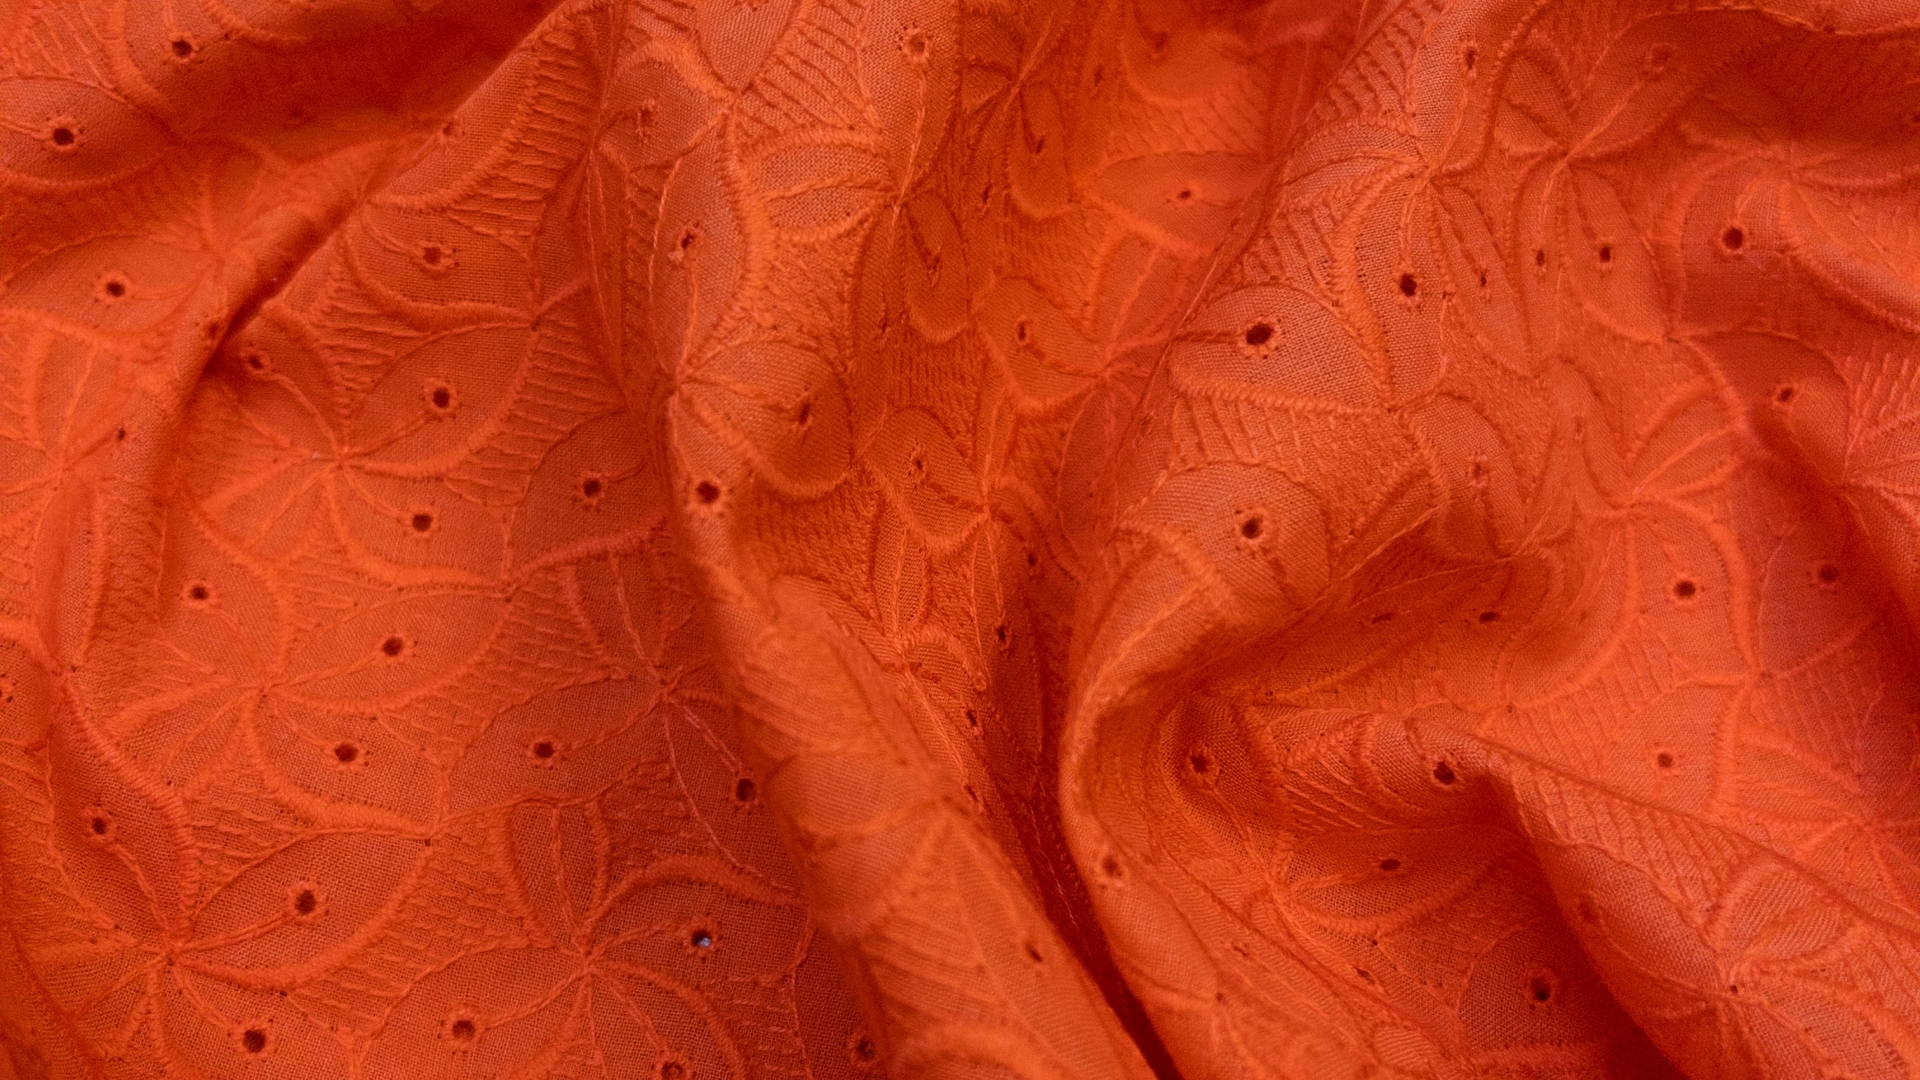 Летняя новинка!
Шитье на хлопковом батисте оранжевого цвета. Лёгкое полотно, немного держит форму, не просвечивает. Подойдет для пошива летнего сарафана, юбки или блузки.